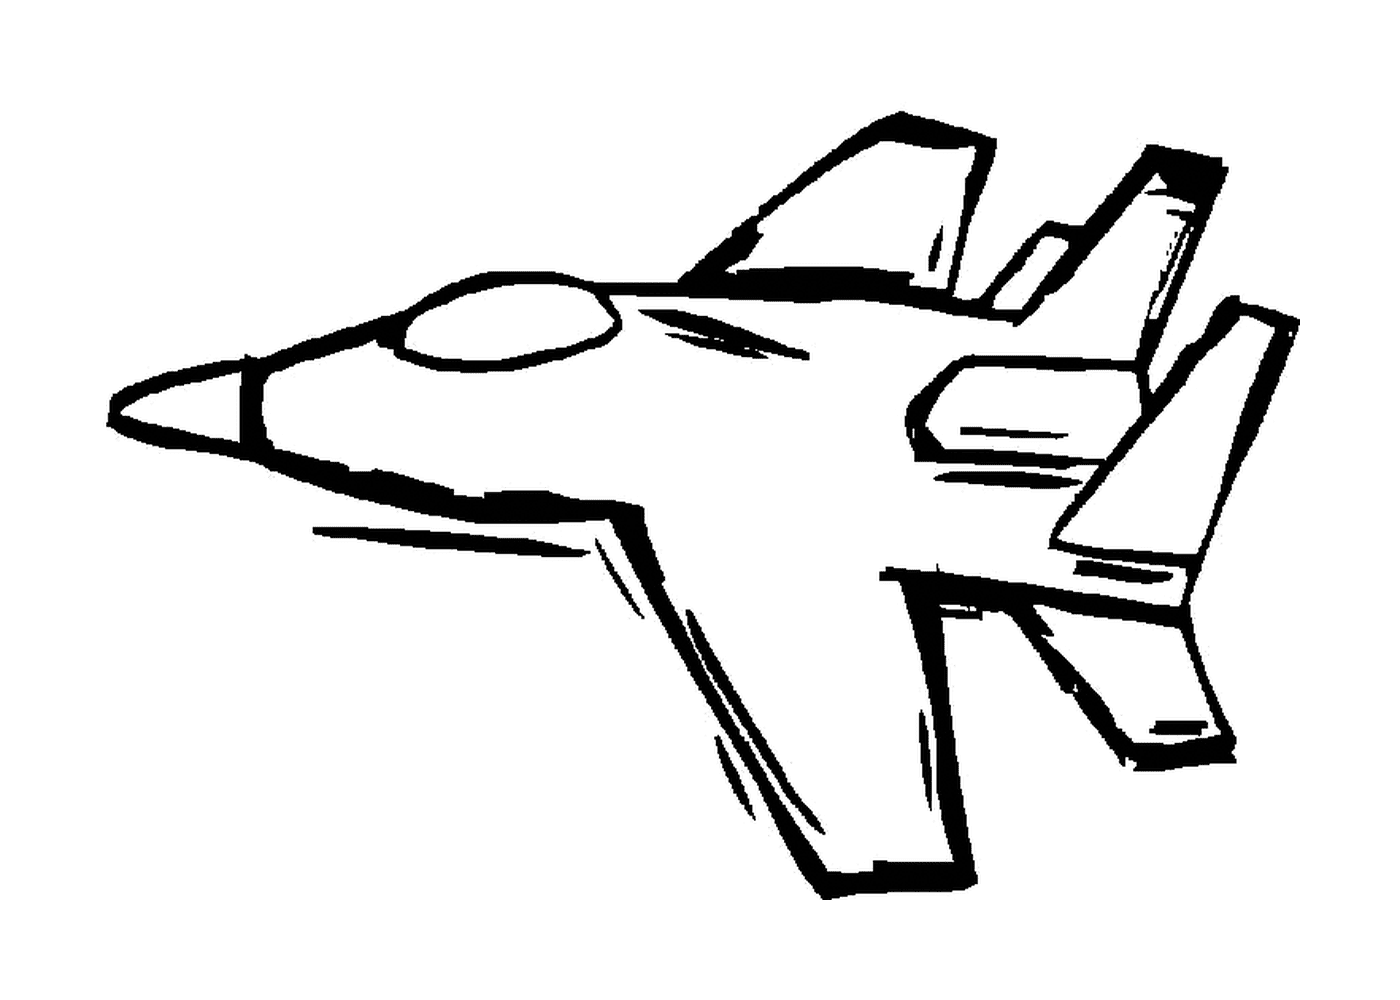   Un avion de chasse 